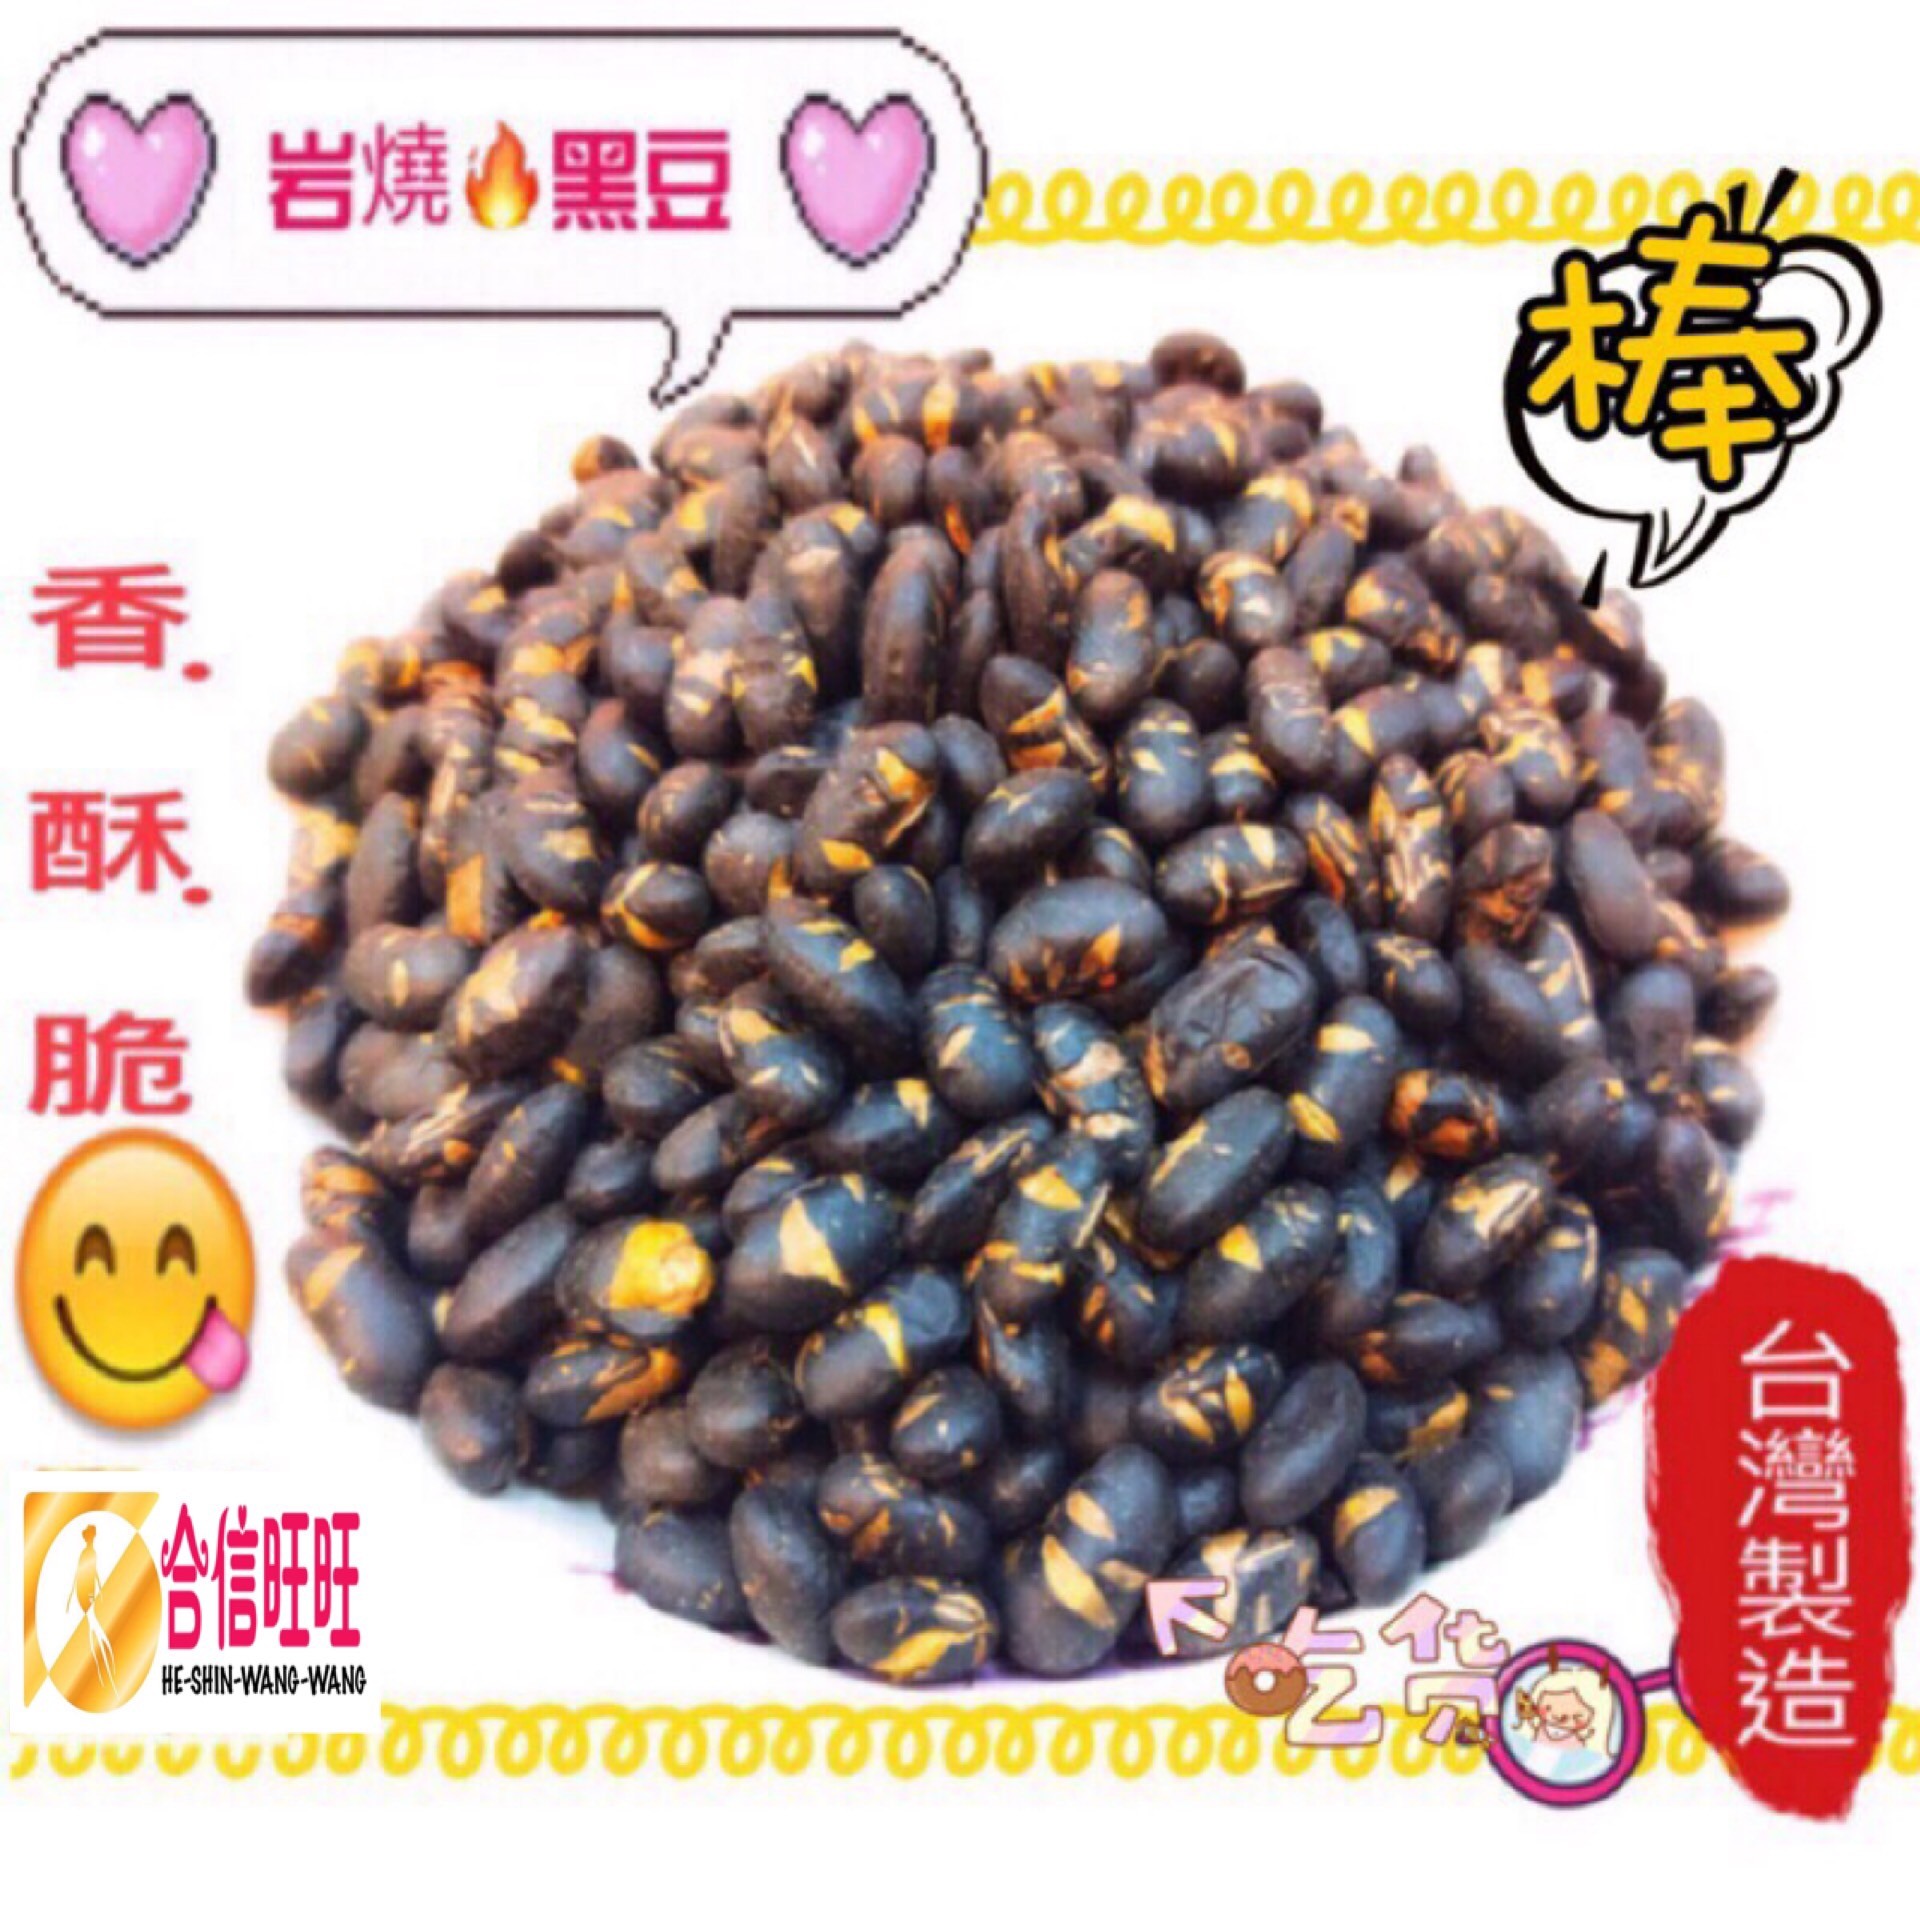 【岩燒黑豆】300g ╱青仁黑豆 香.酥.脆